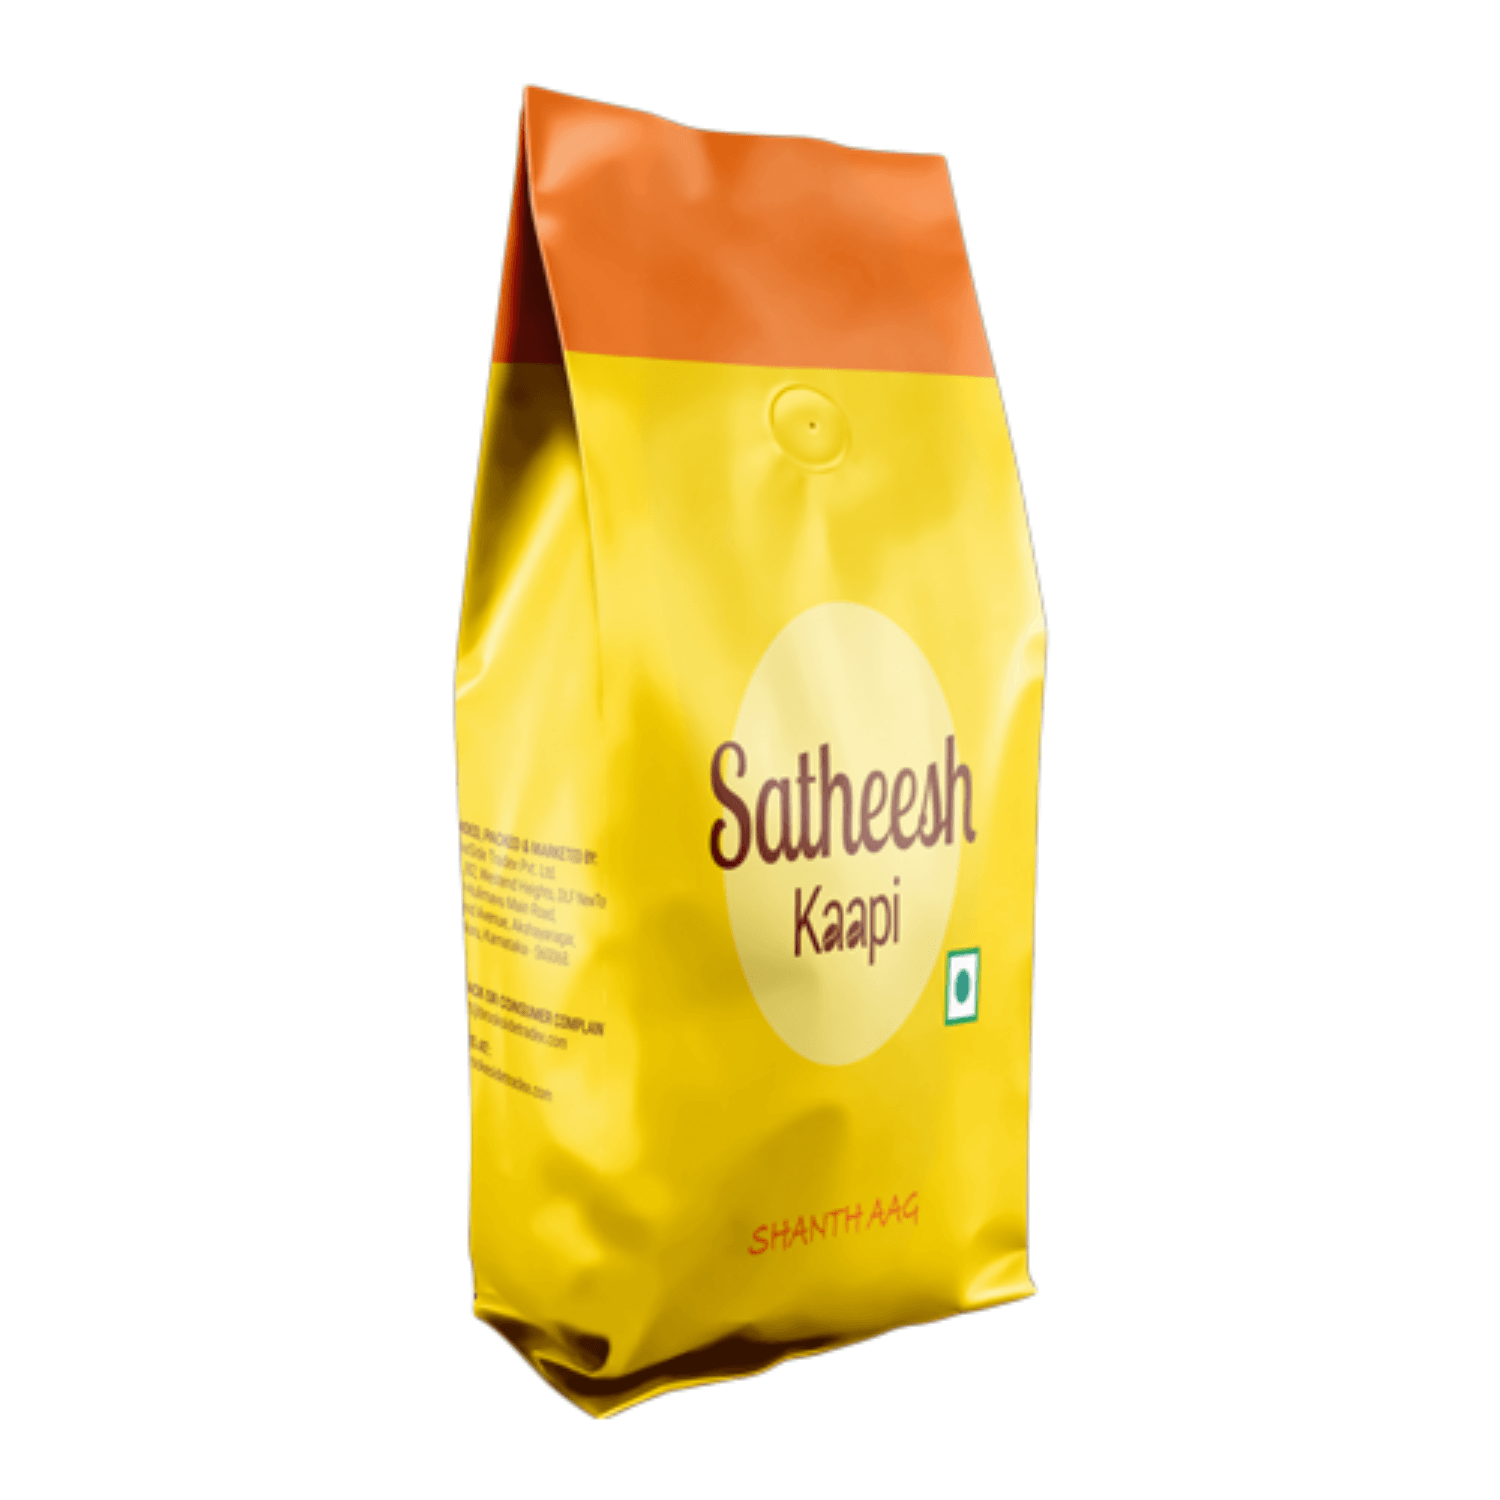 SATHEESH KAAPI Shanth Aag Finest Arabica Medium Roasted Coffee Beans